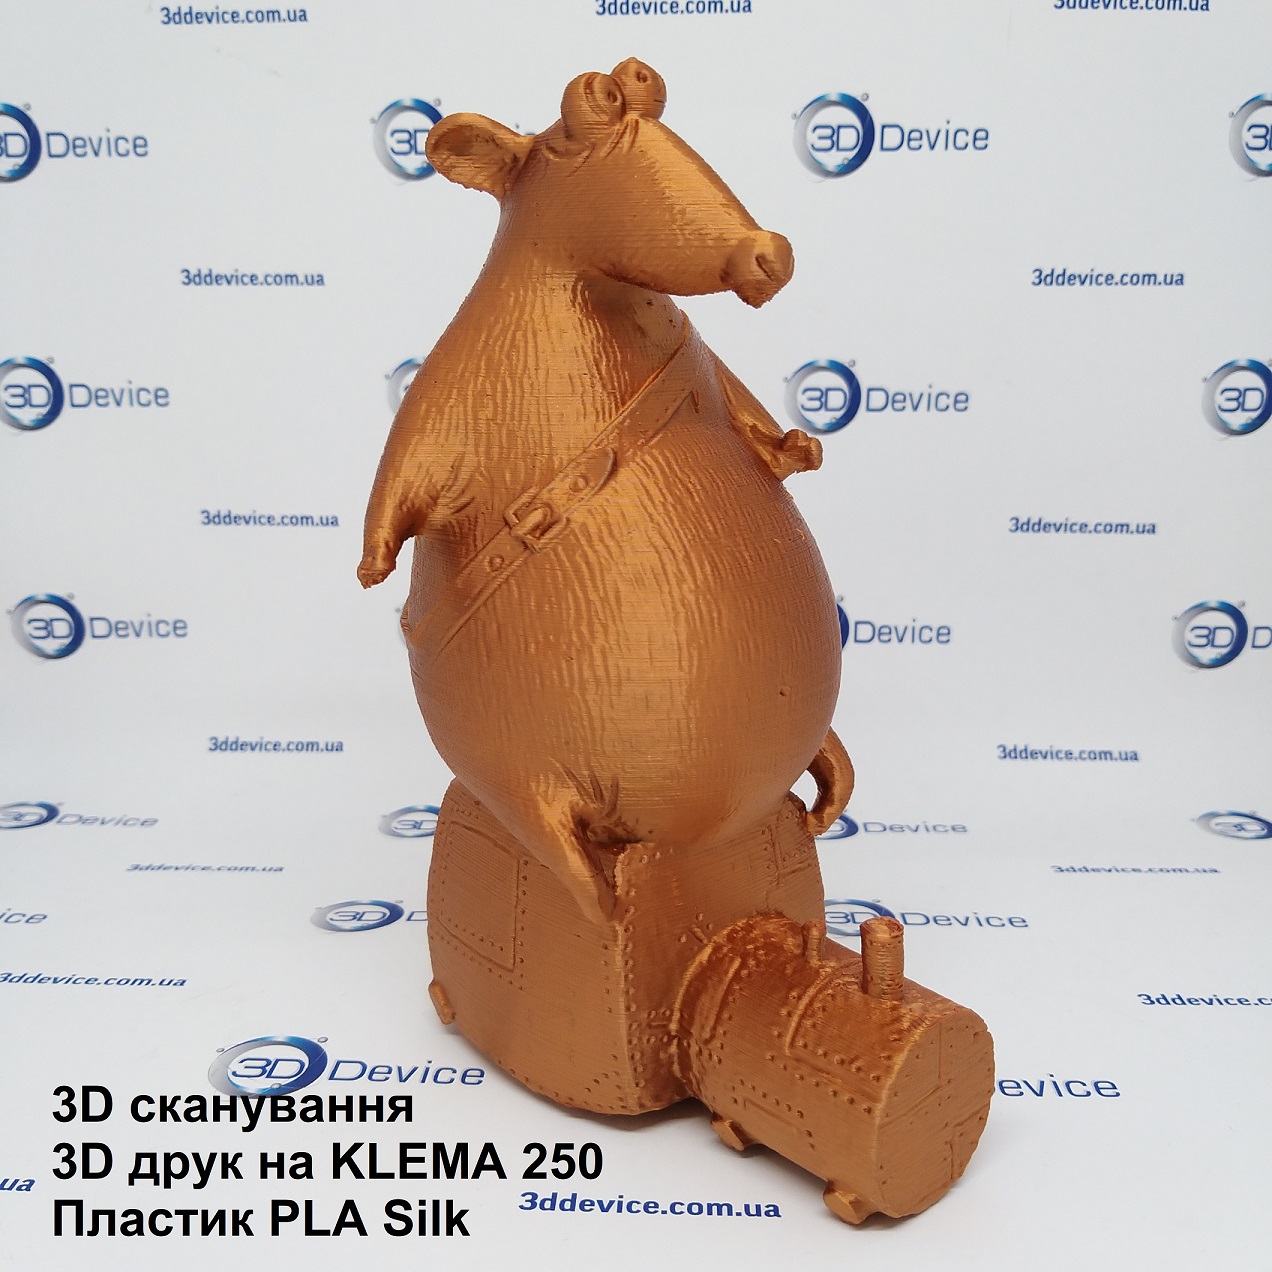 Киев-3Д-печать-пластик-PLA-silk-мышь1